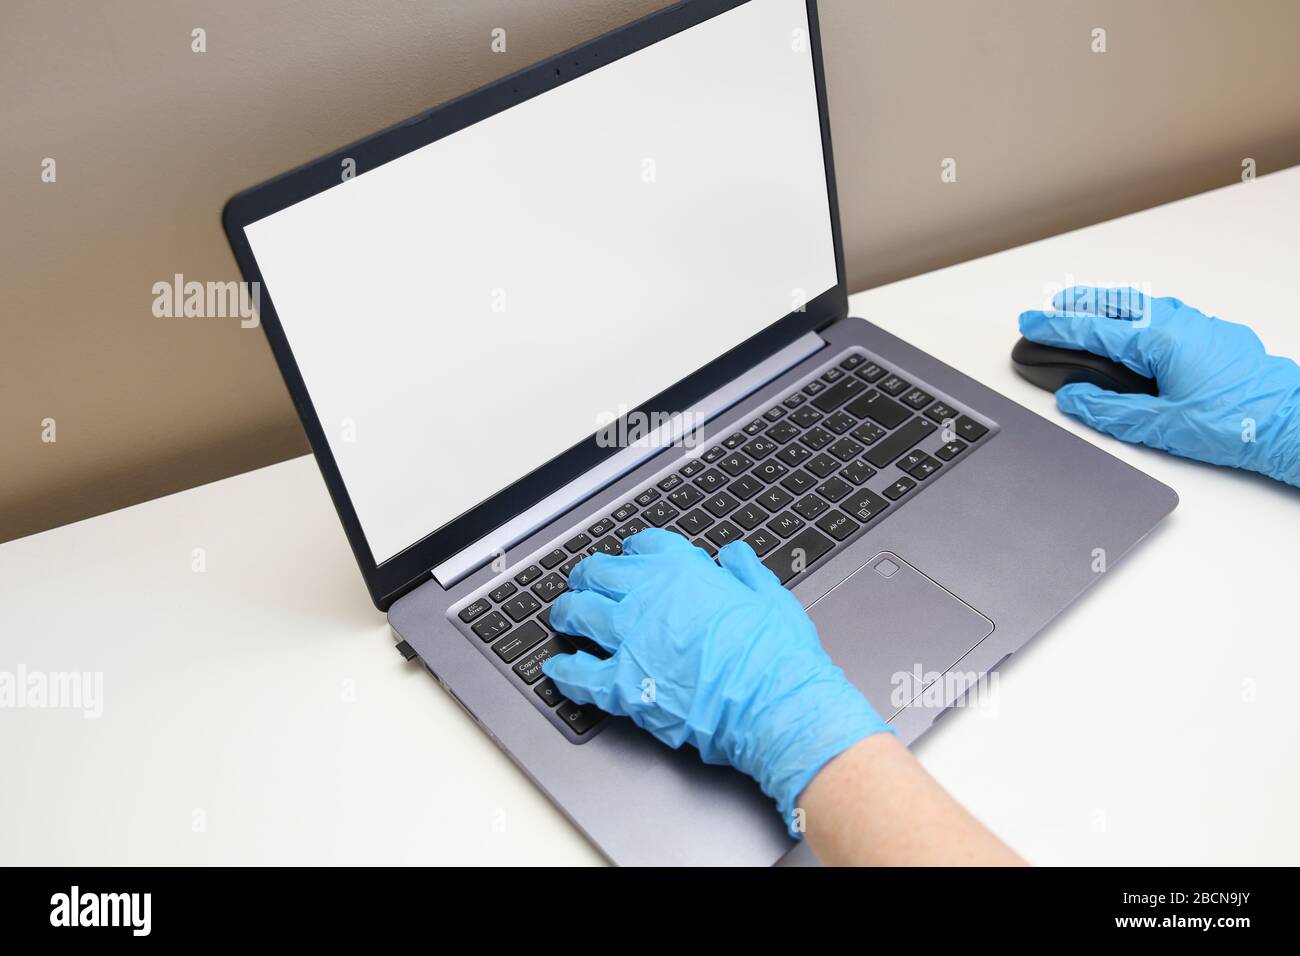 Utilisateur d'ordinateur portant des gants médicaux pour utiliser un ordinateur portable. Banque D'Images